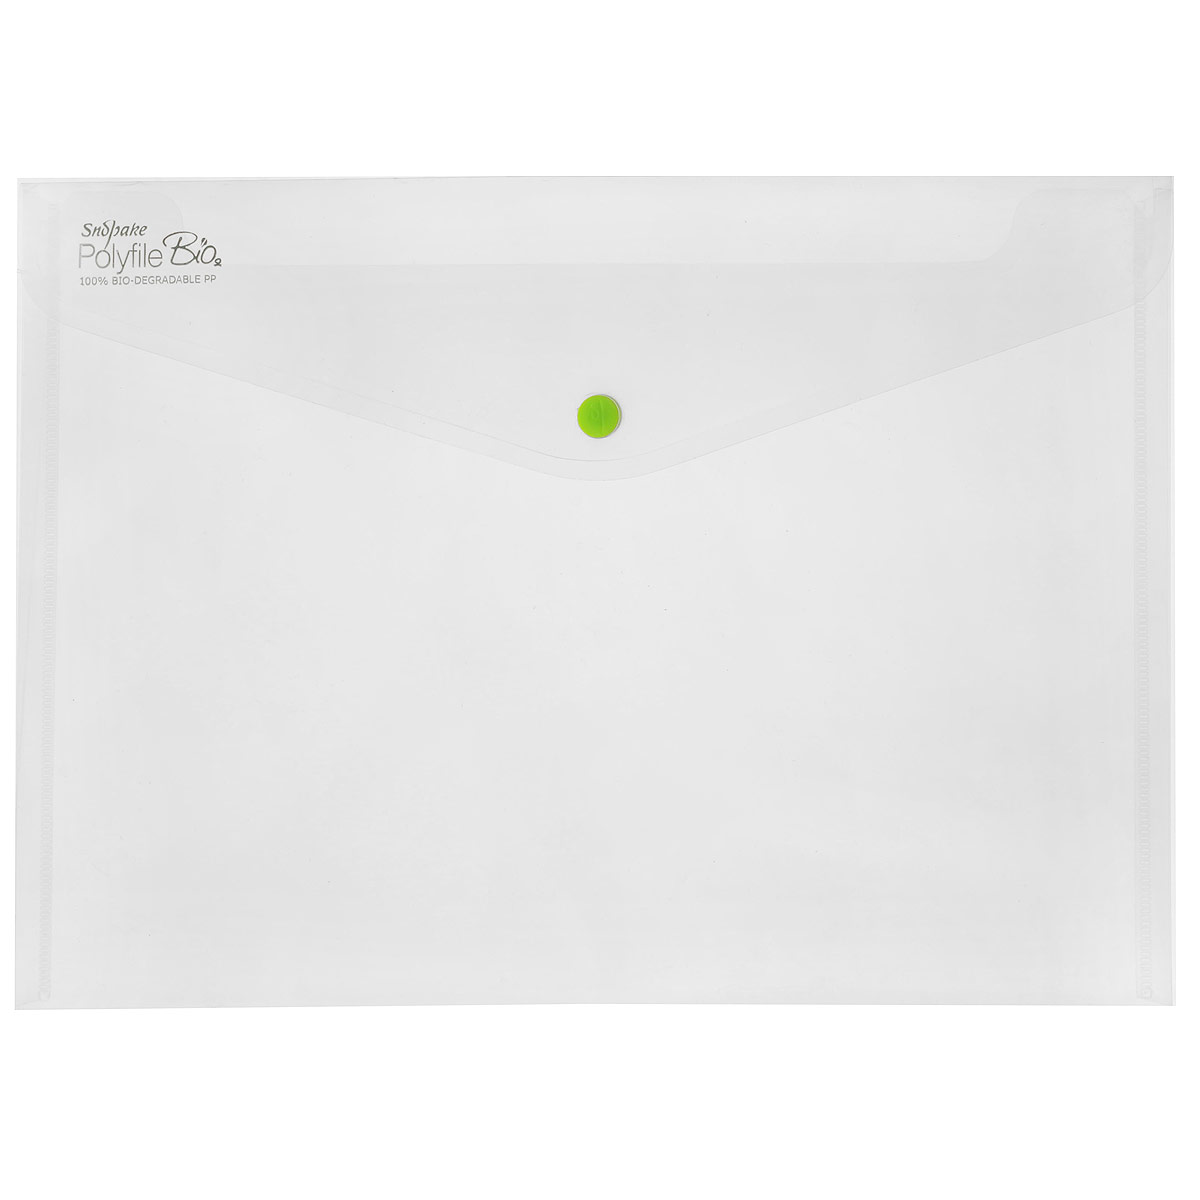 Папка-конверт на кнопке Snopake "Bio", из биопластика, цвет: прозрачный. Формат А4